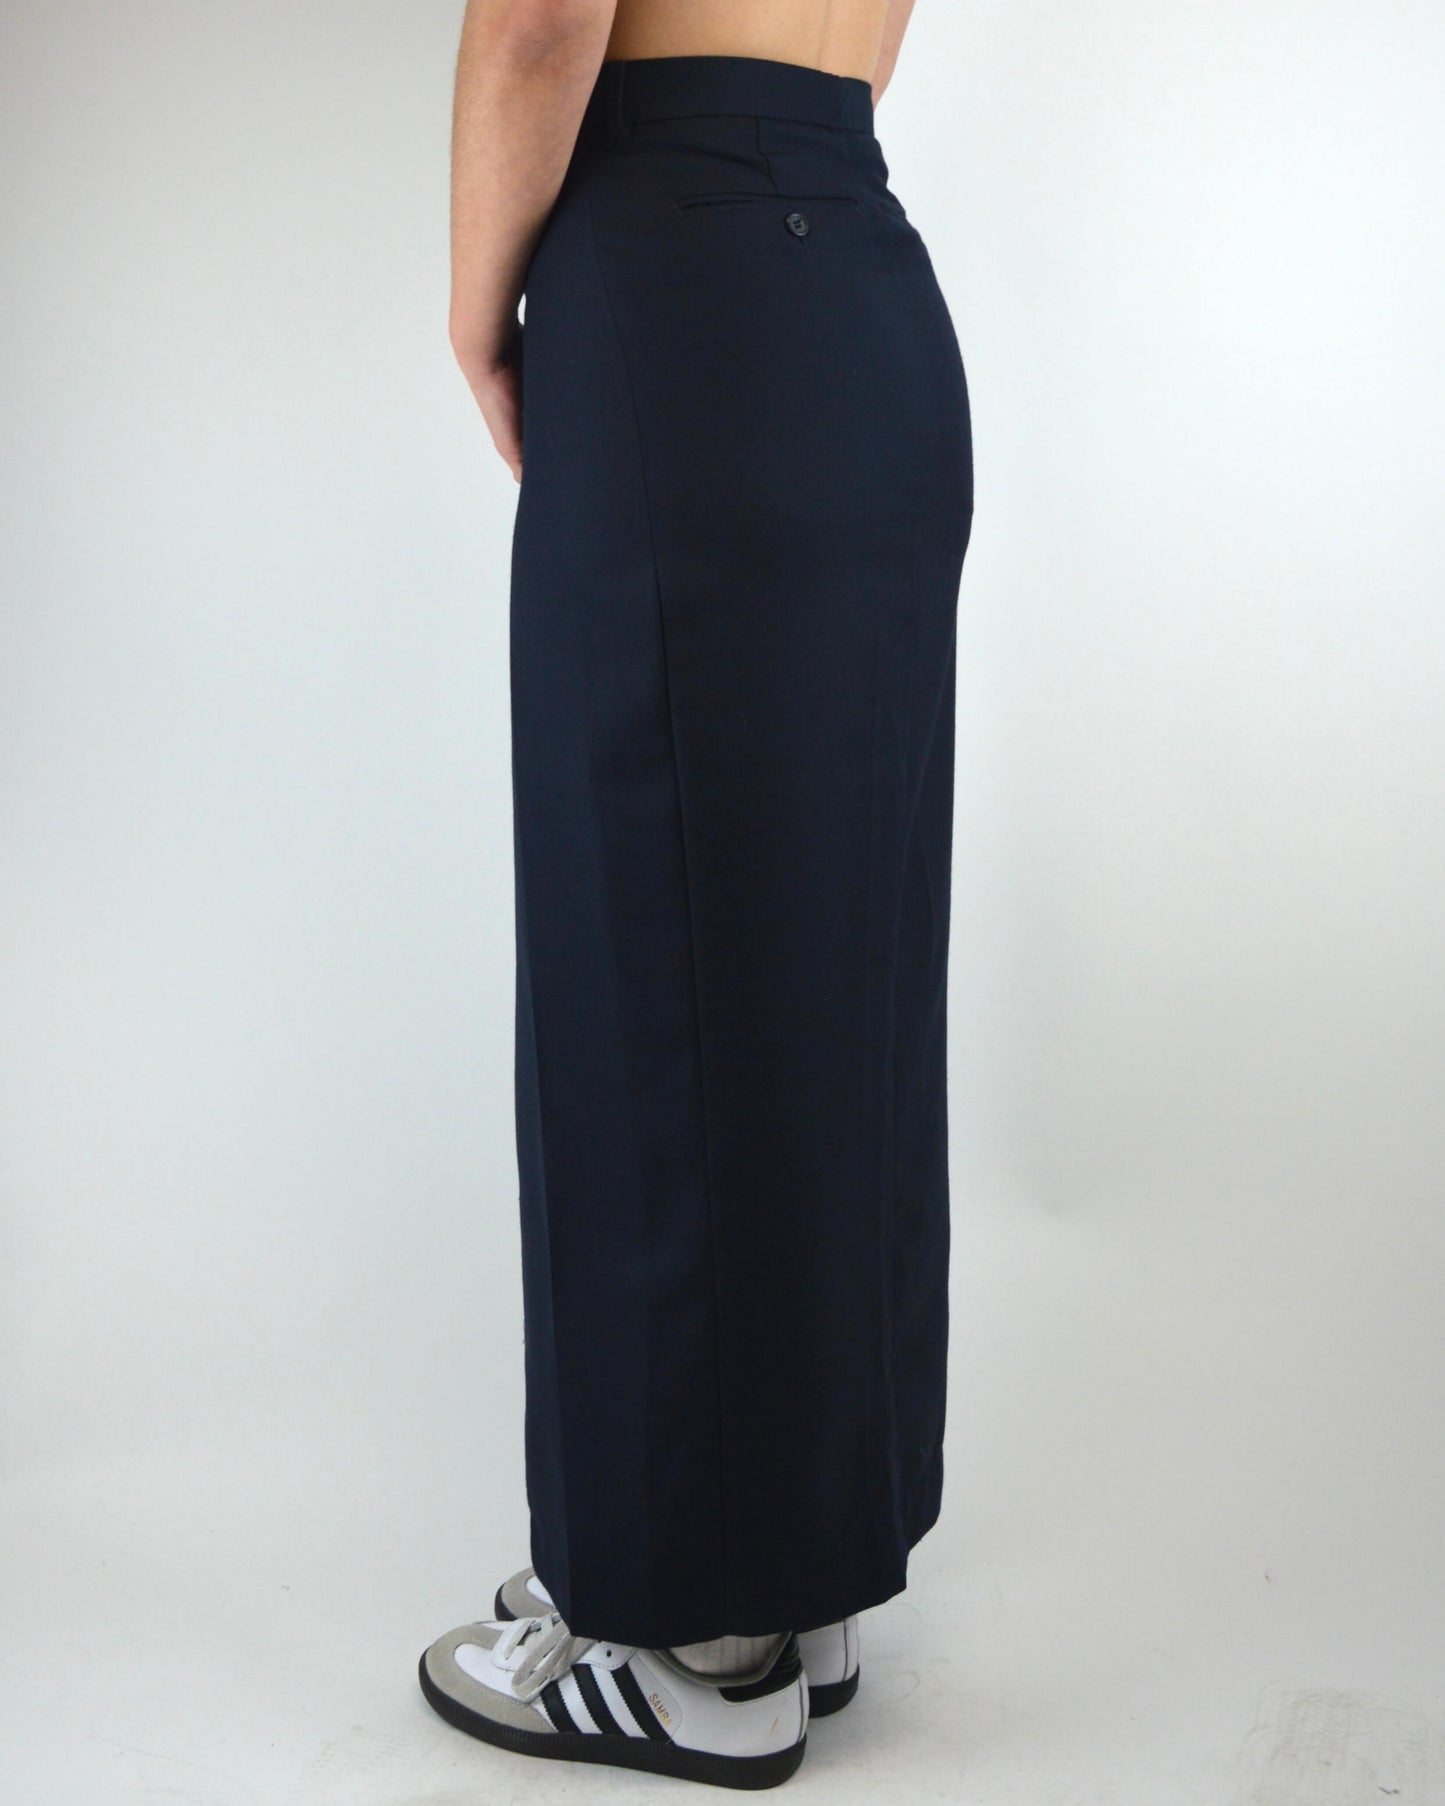 Long Skirt - Navy Short (XS/S)